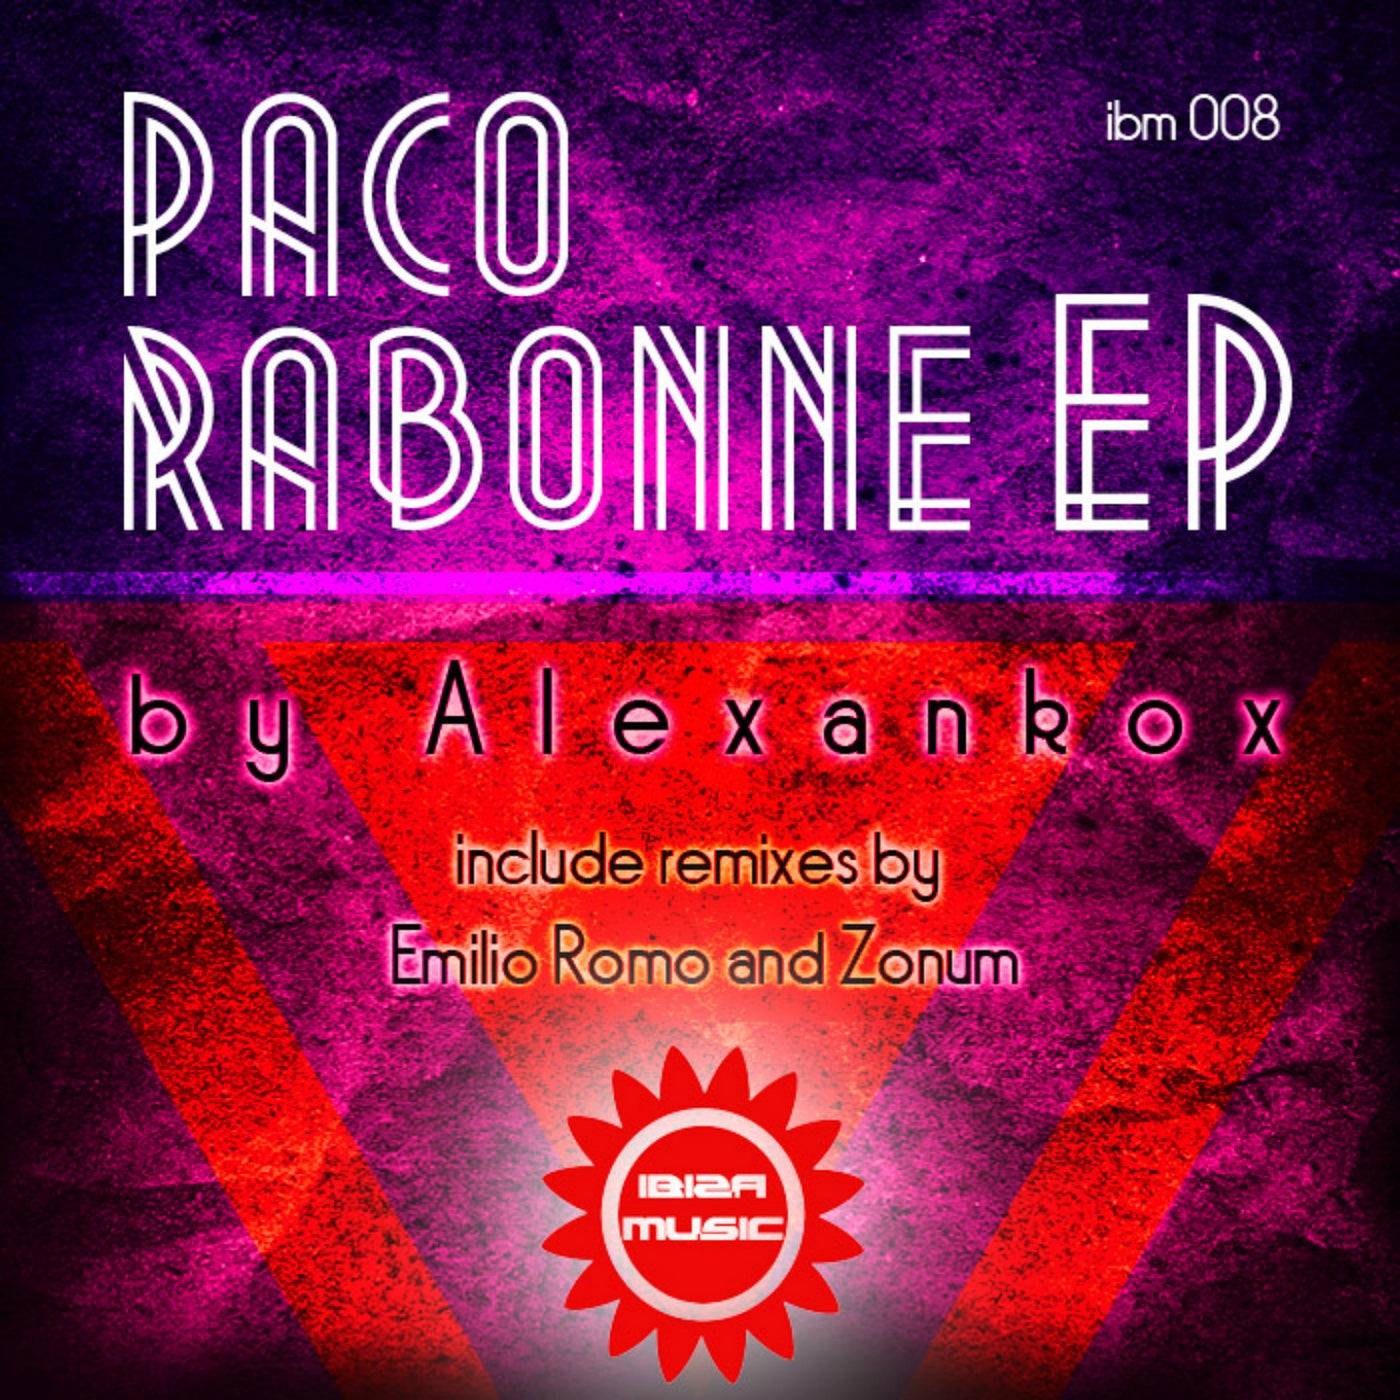 Ibiza Music 008: Paco Rabonne